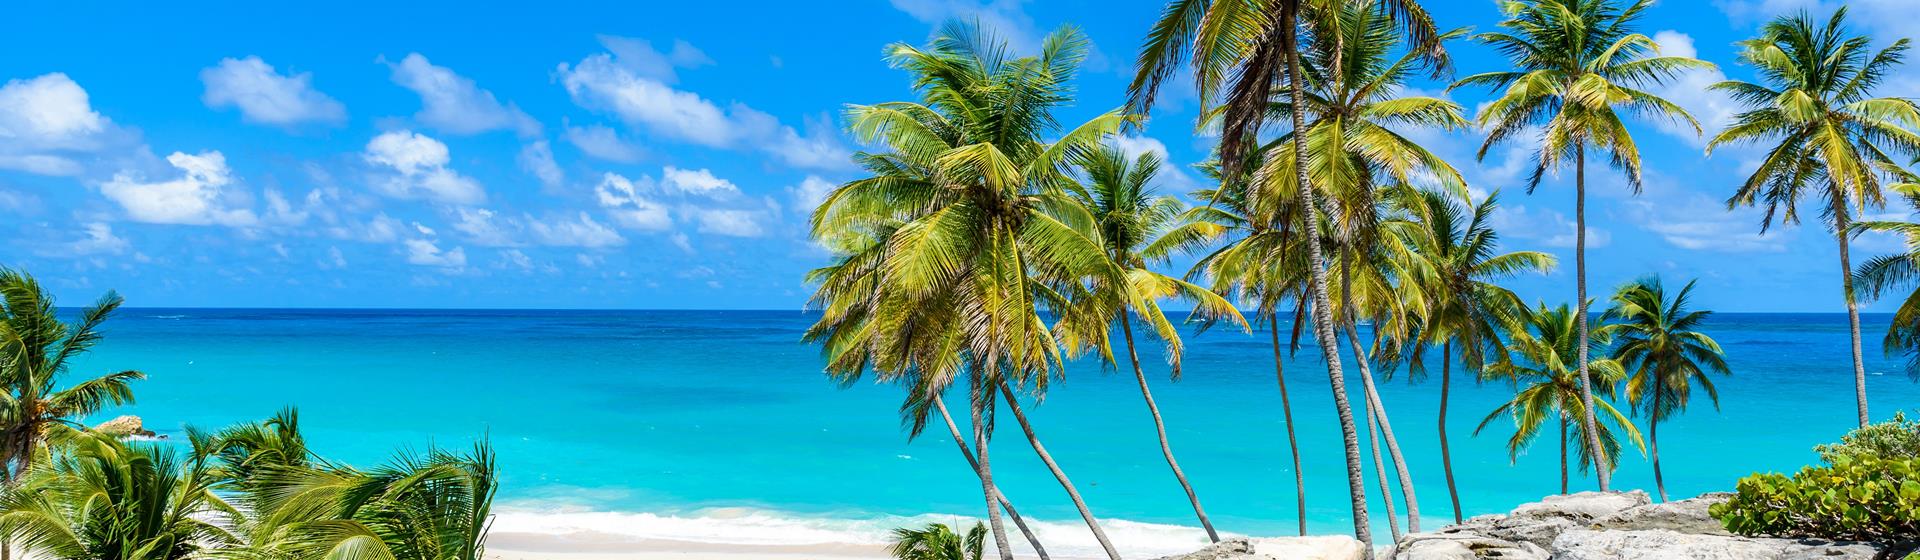 Holidays to Barbados